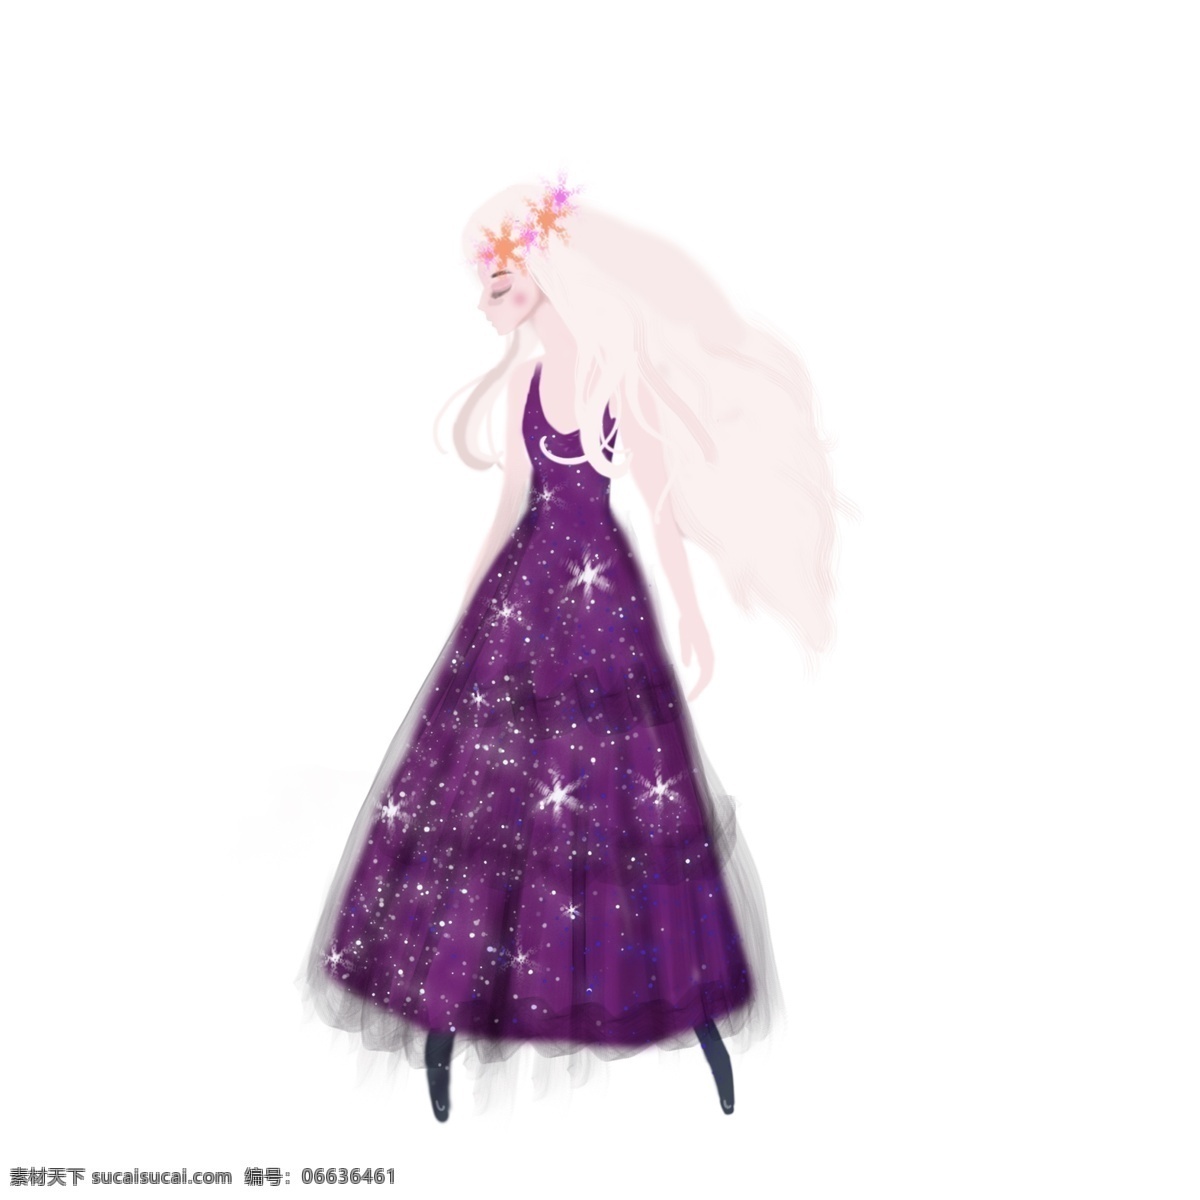 梦幻 手绘 女孩 商用 元素 女生 人物设计 手绘素材 紫色长裙